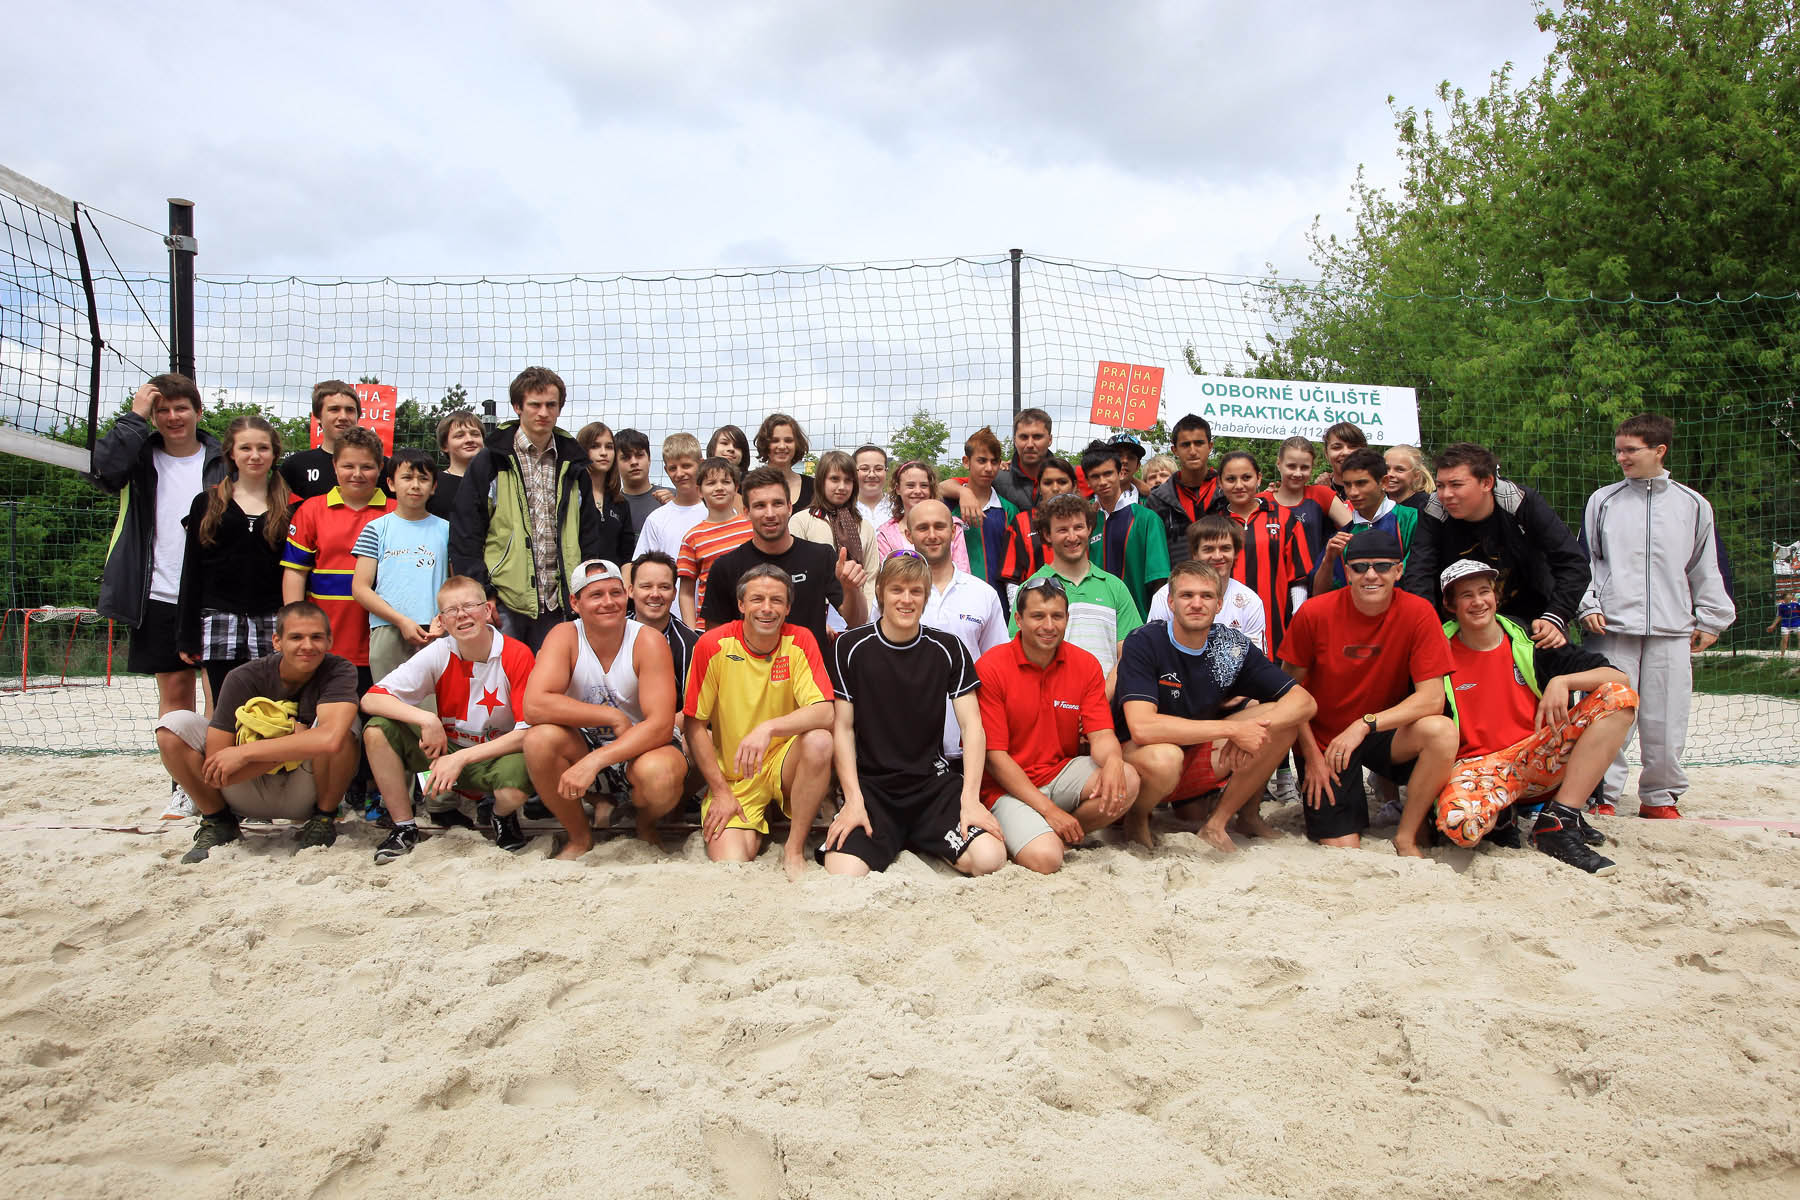 Olympionici se utkali v beachvolejbalovém turnaji s dětmi z pražských škol a dětských domovů